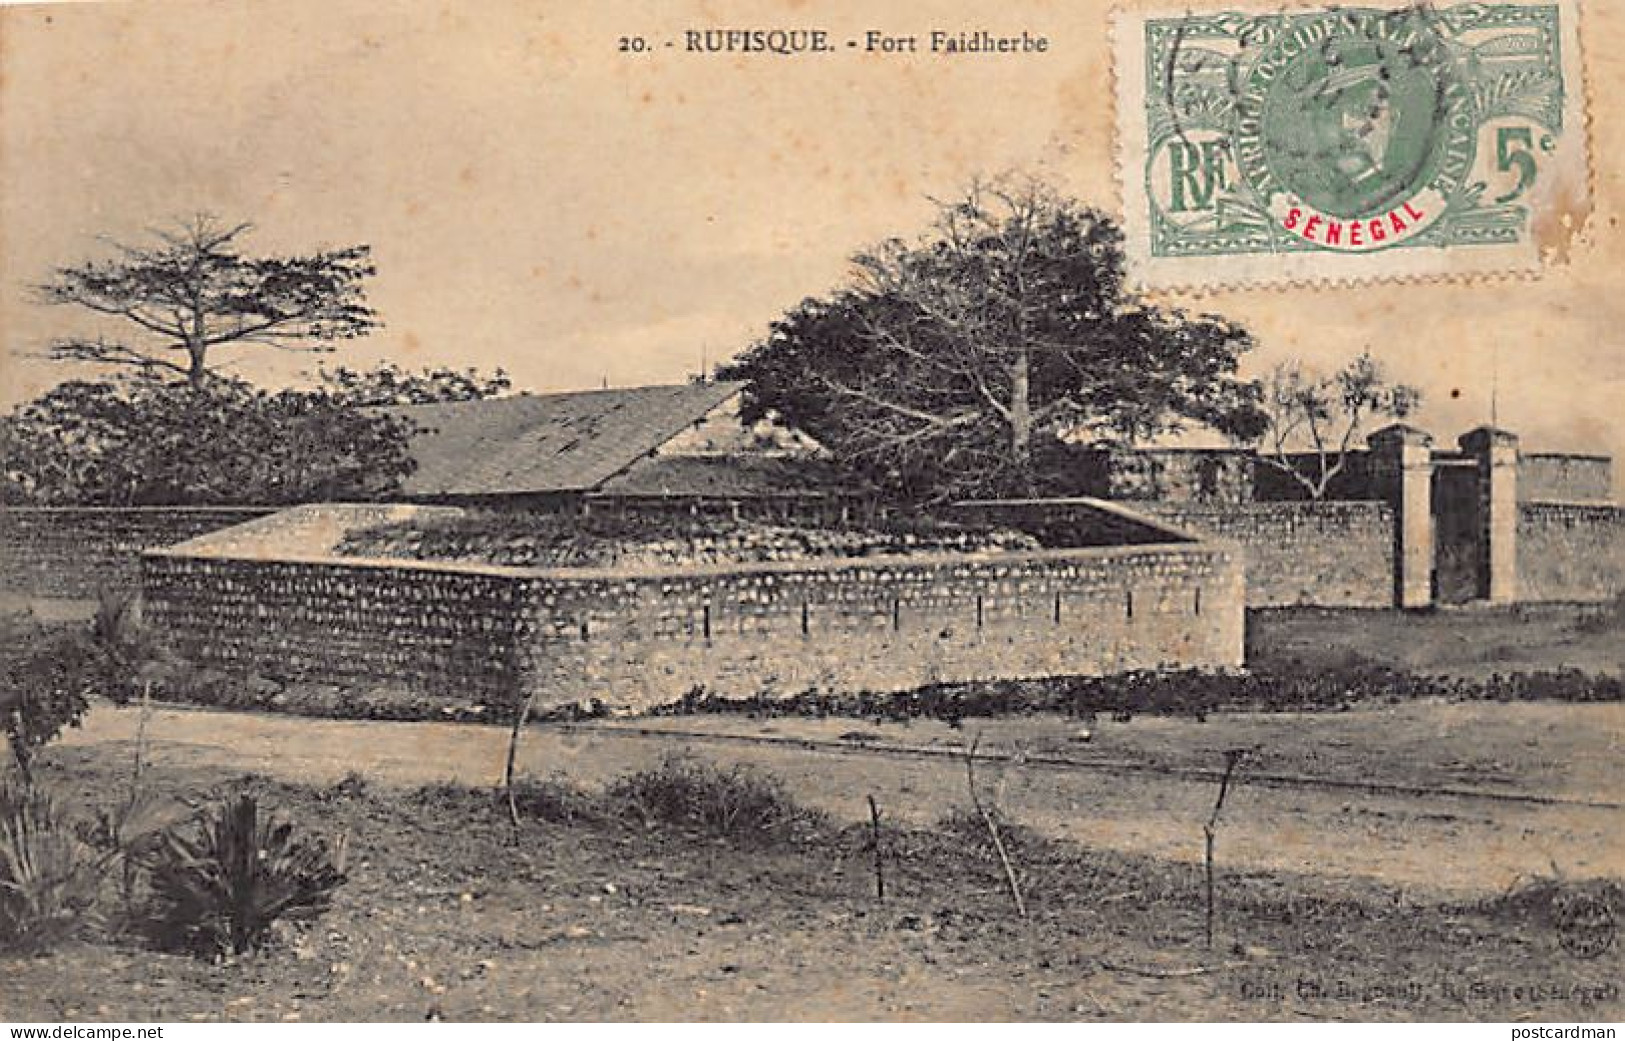 Sénégal - RUFISQUE - Fort Faidherbe - Ed. Ch. Regnault 20 - Sénégal